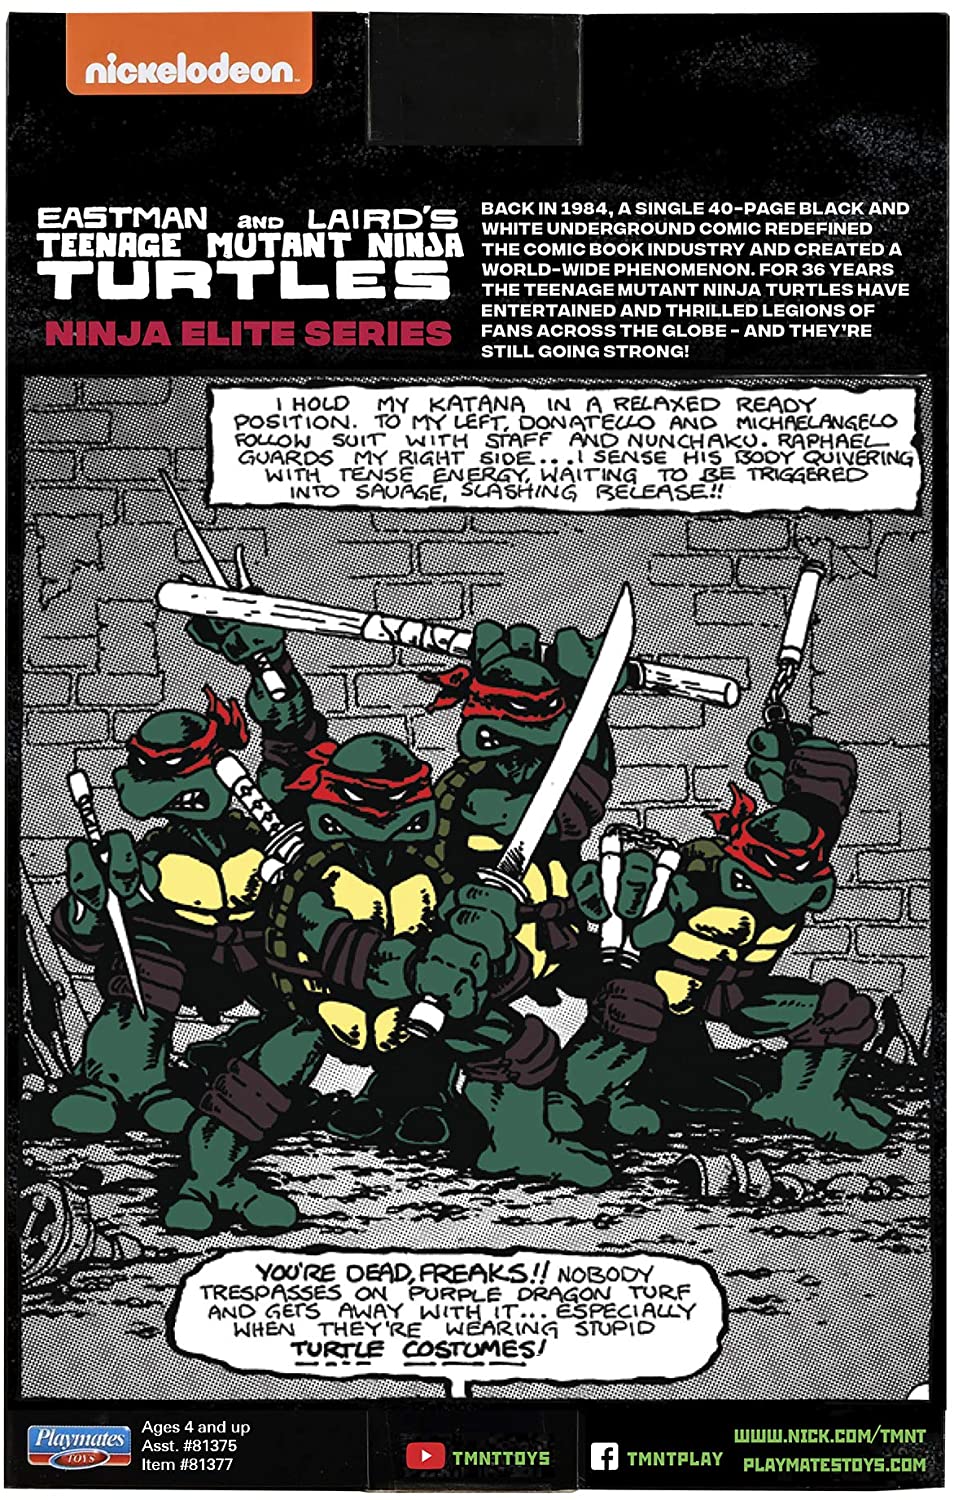 Mutant Origins: Donatello (Teenage Mutant Ninja Turtles) eBook by